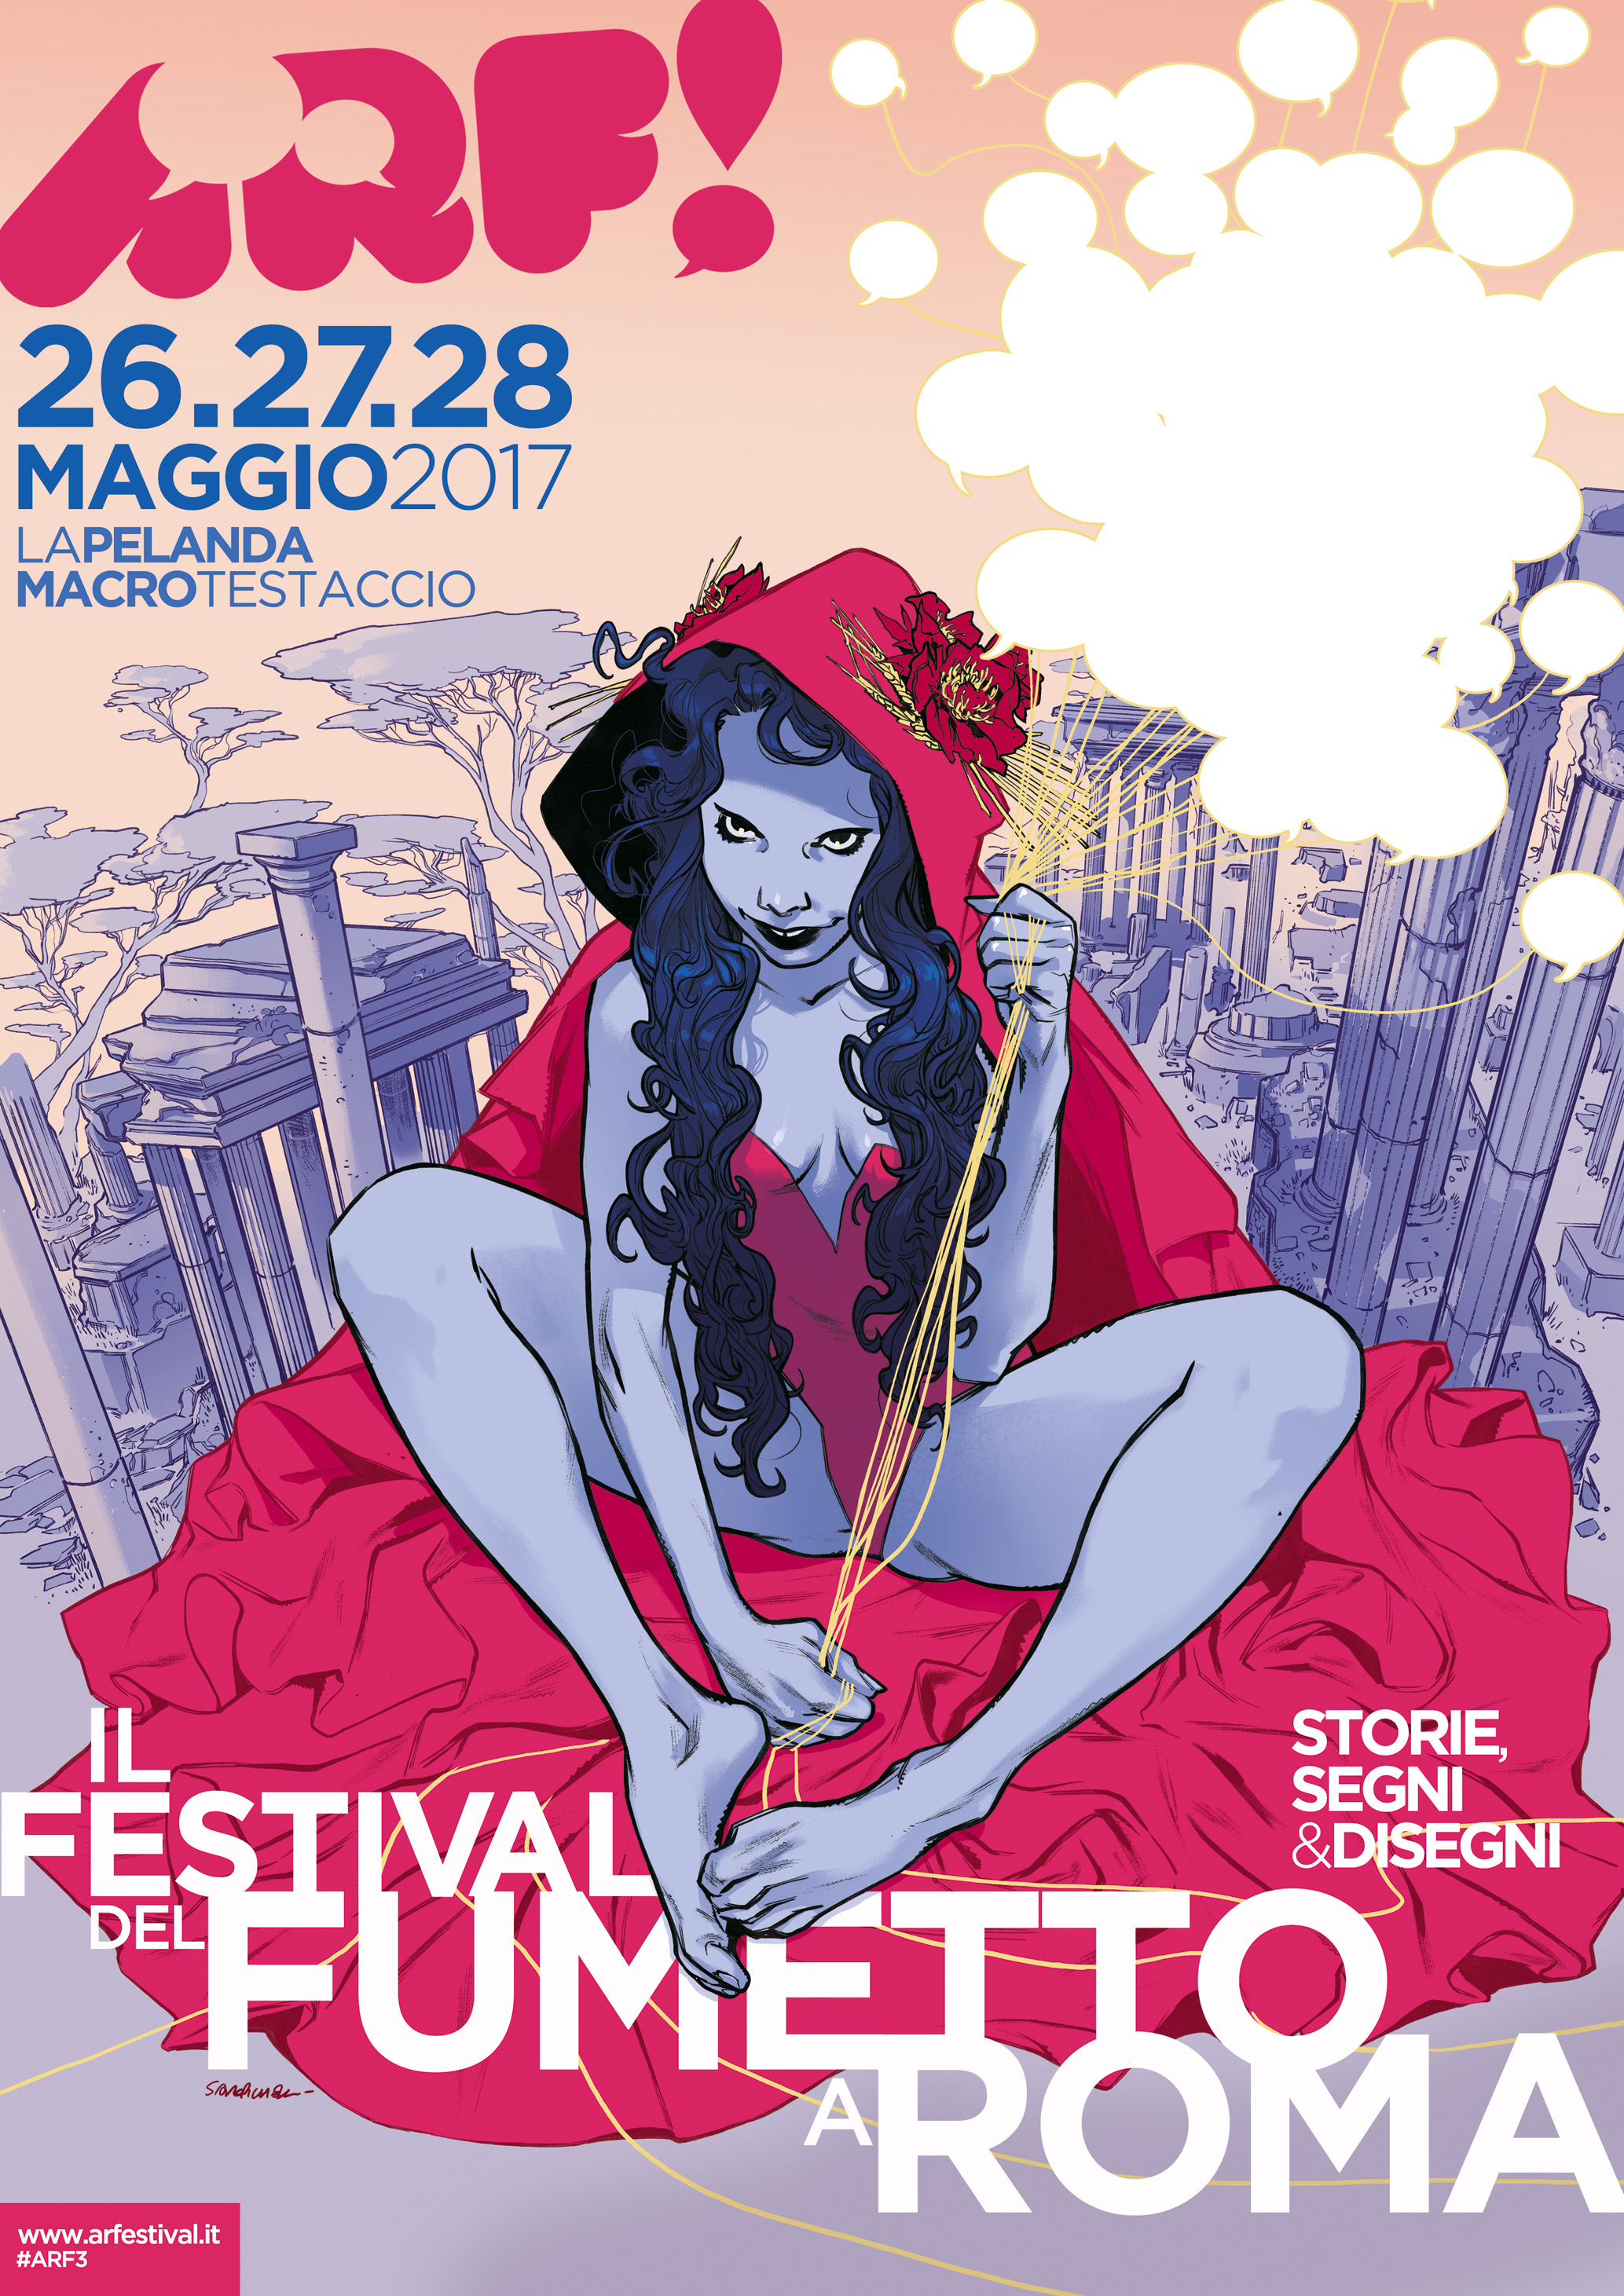 Roma, al MACRO Testaccio: ARF! «Festival di storie, segni e disegni»